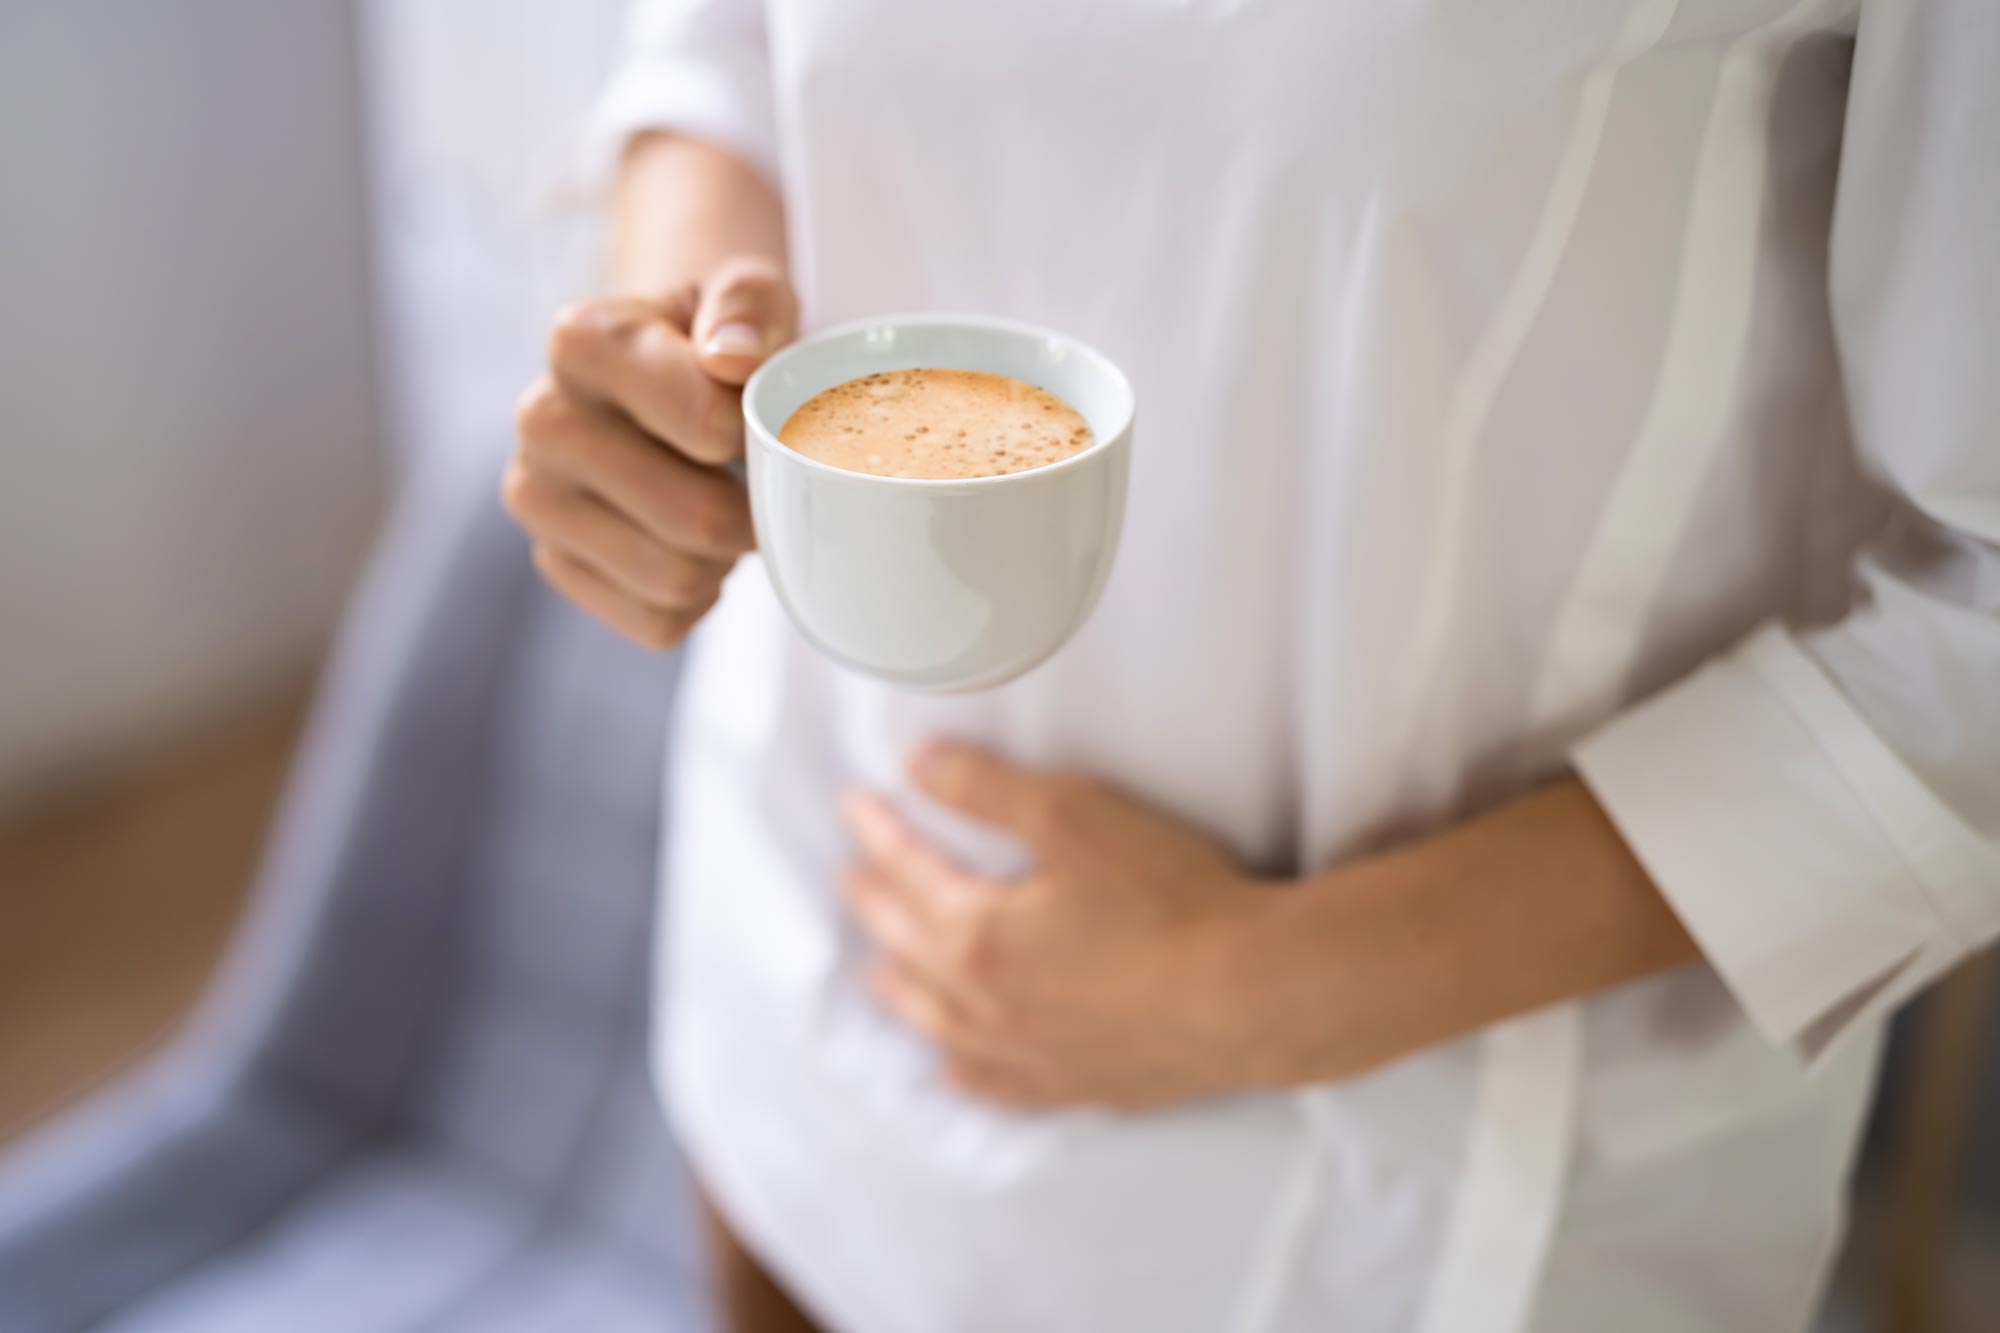 Можно ли беременной женщине пить кофе?